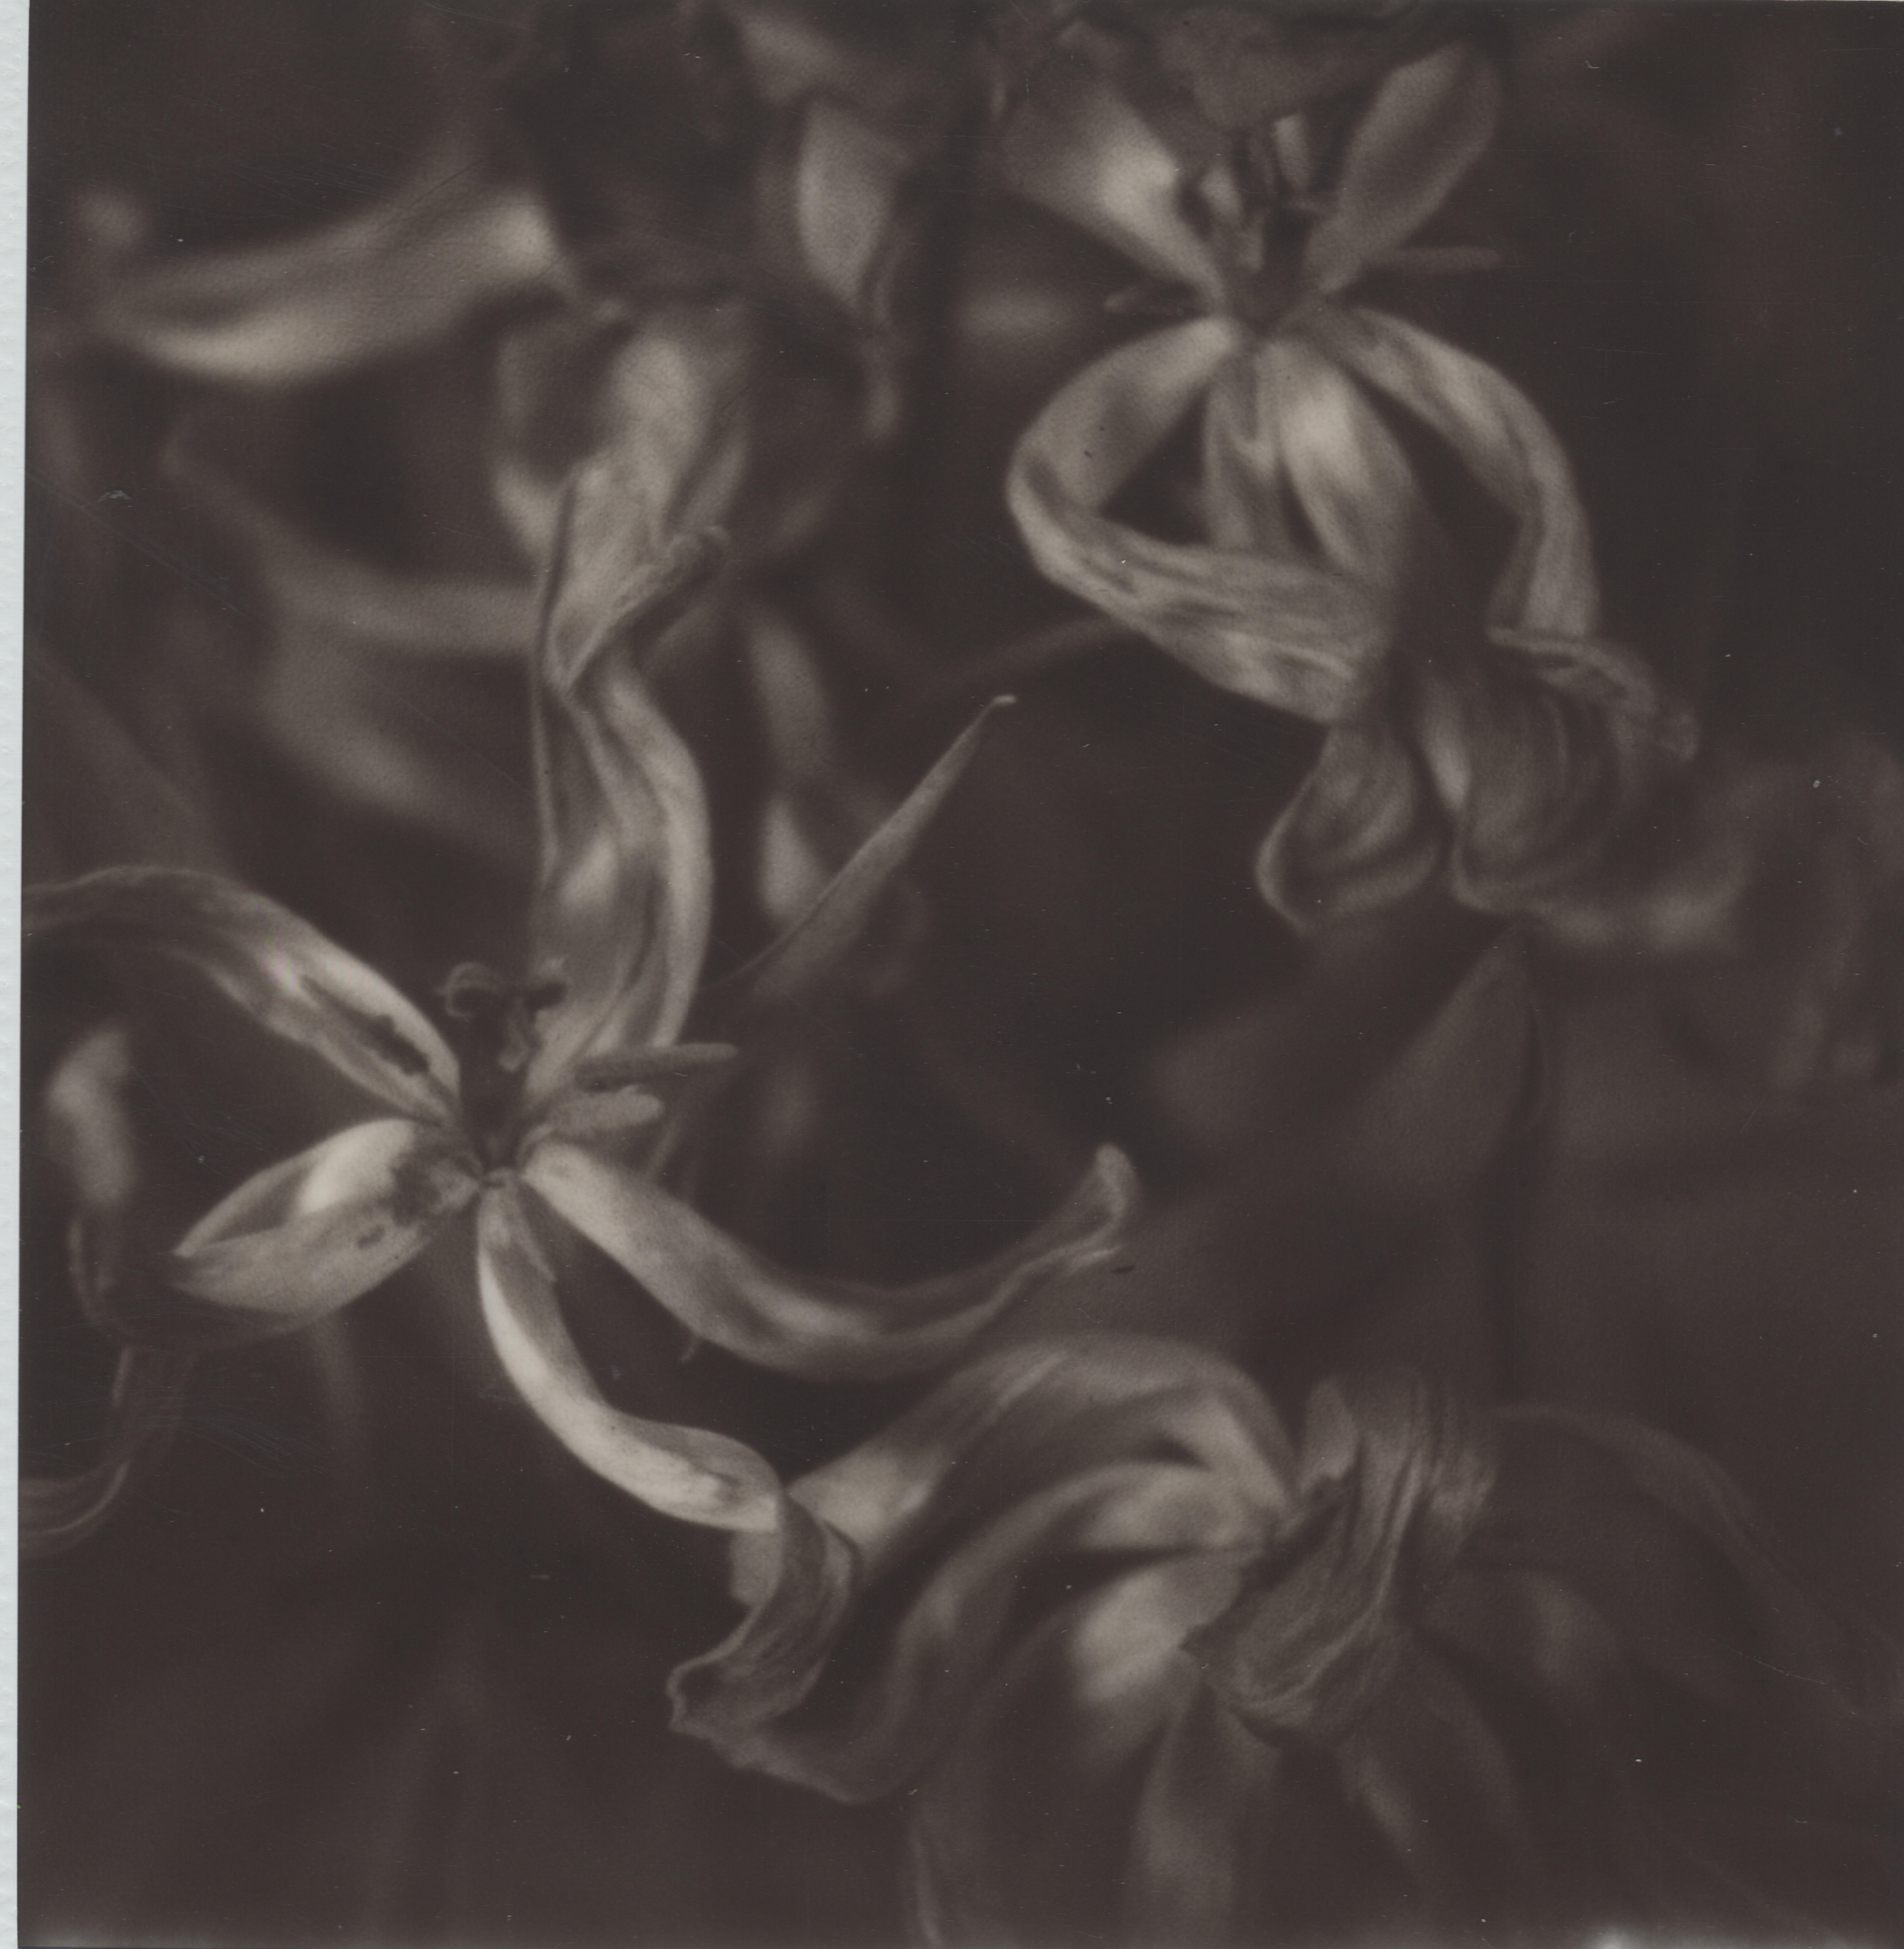 Past Bloom IV - Zeitgenössische Schwarz-Weiß-Polaroid-Originalfotografie.

Pia Clodis Werke umfassen Momente und Erinnerungen an ihre unzähligen Spaziergänge durch Städte und Naturlandschaften. Diese Gelegenheiten, einen Gegenstand, eine Person oder